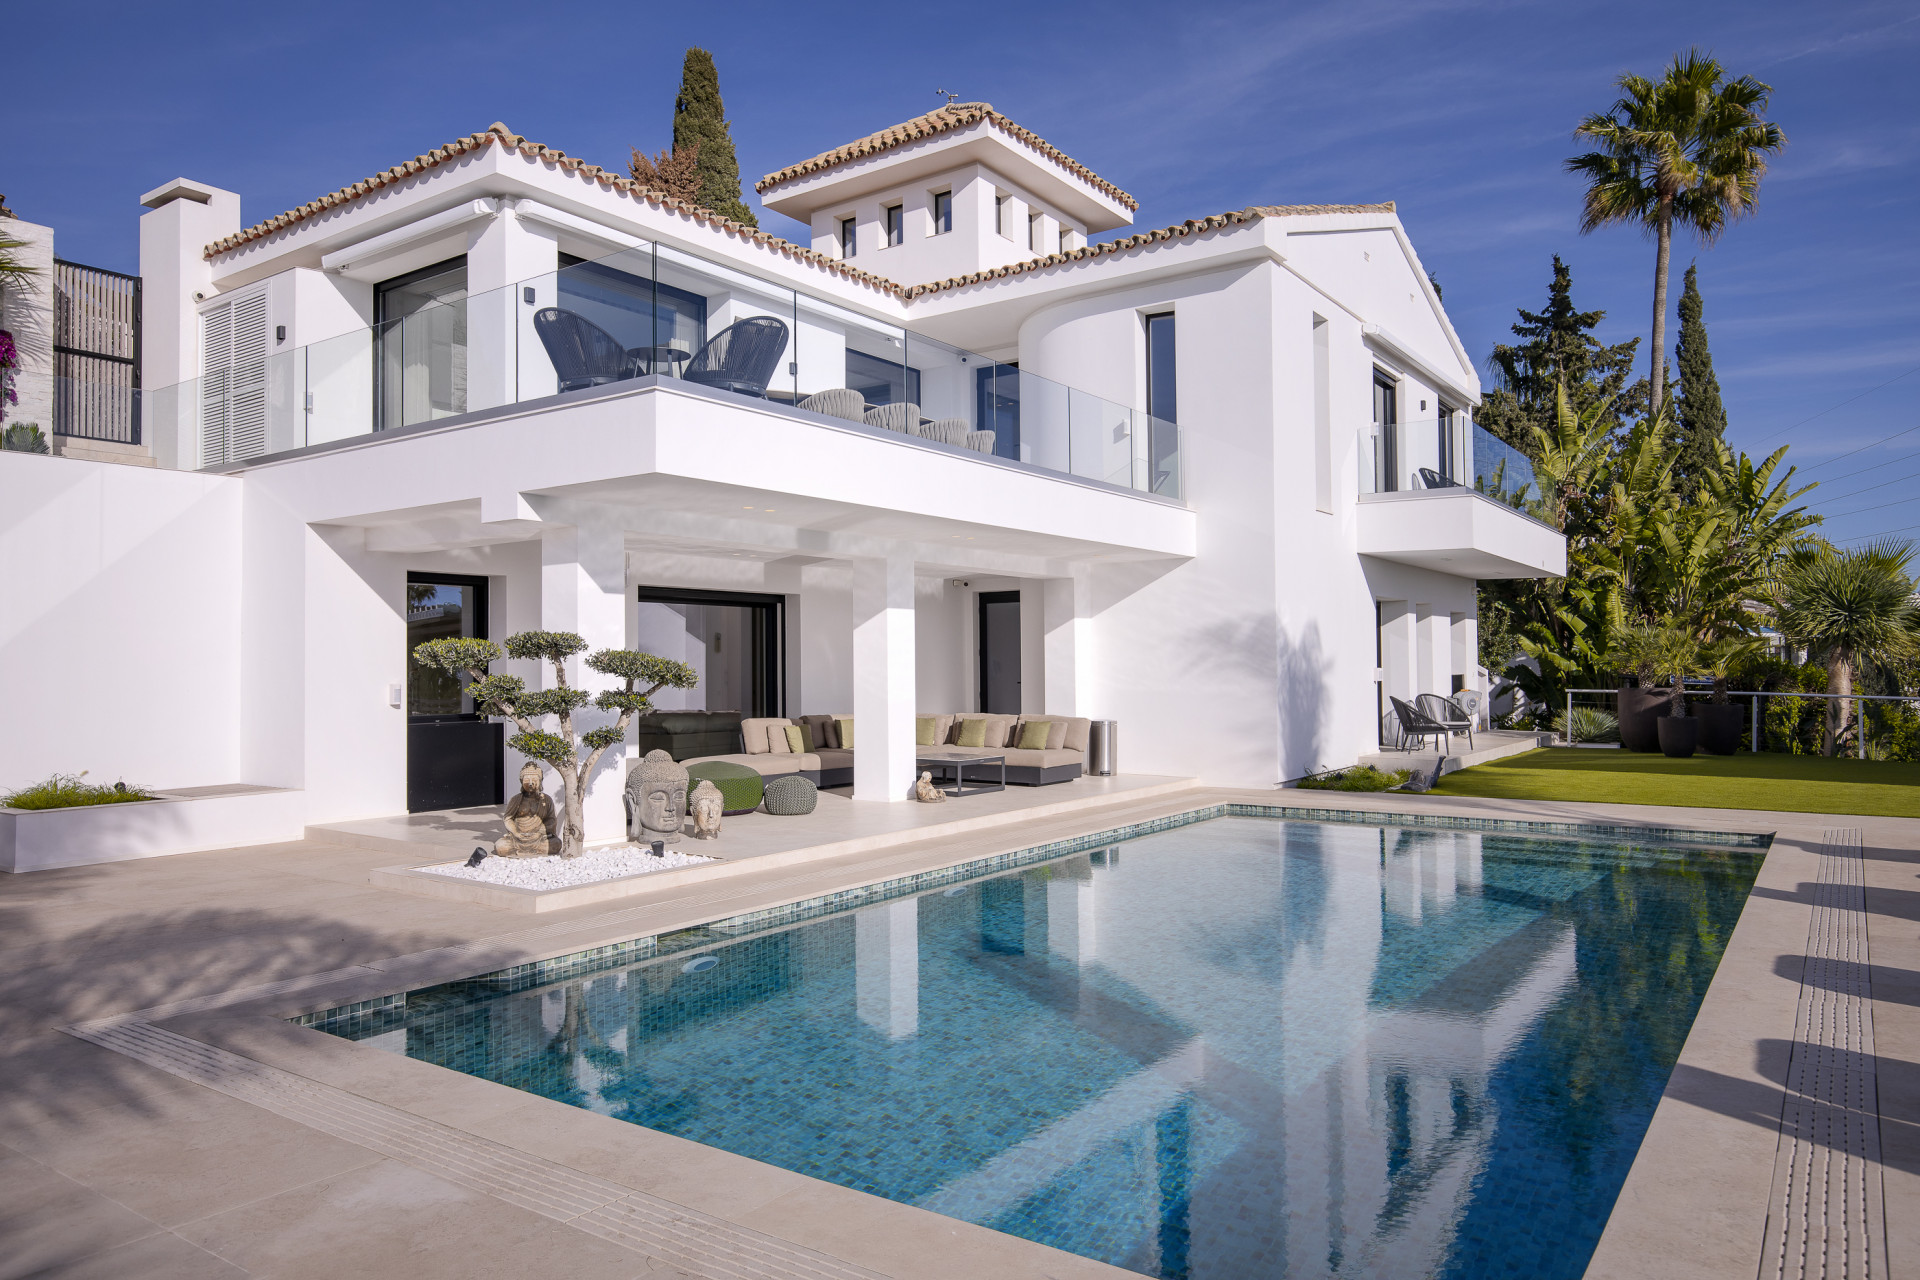 Turnkey luxury villa for sale in El Rosario, East Marbella